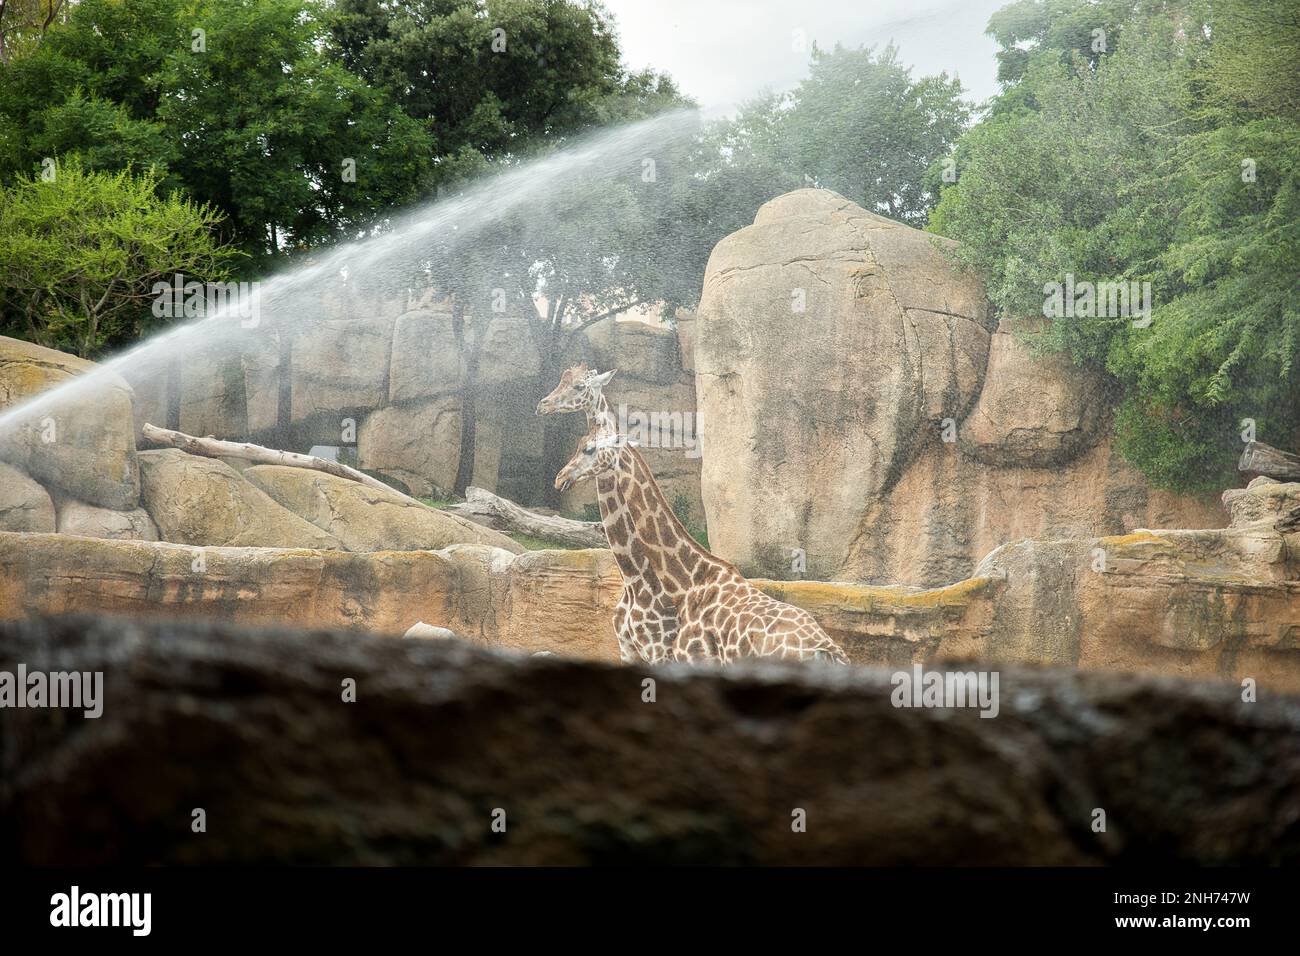 Foto a lunga distanza di due giraffe dietro una fontana d'acqua con un paesaggio roccioso sullo sfondo. Foto Stock